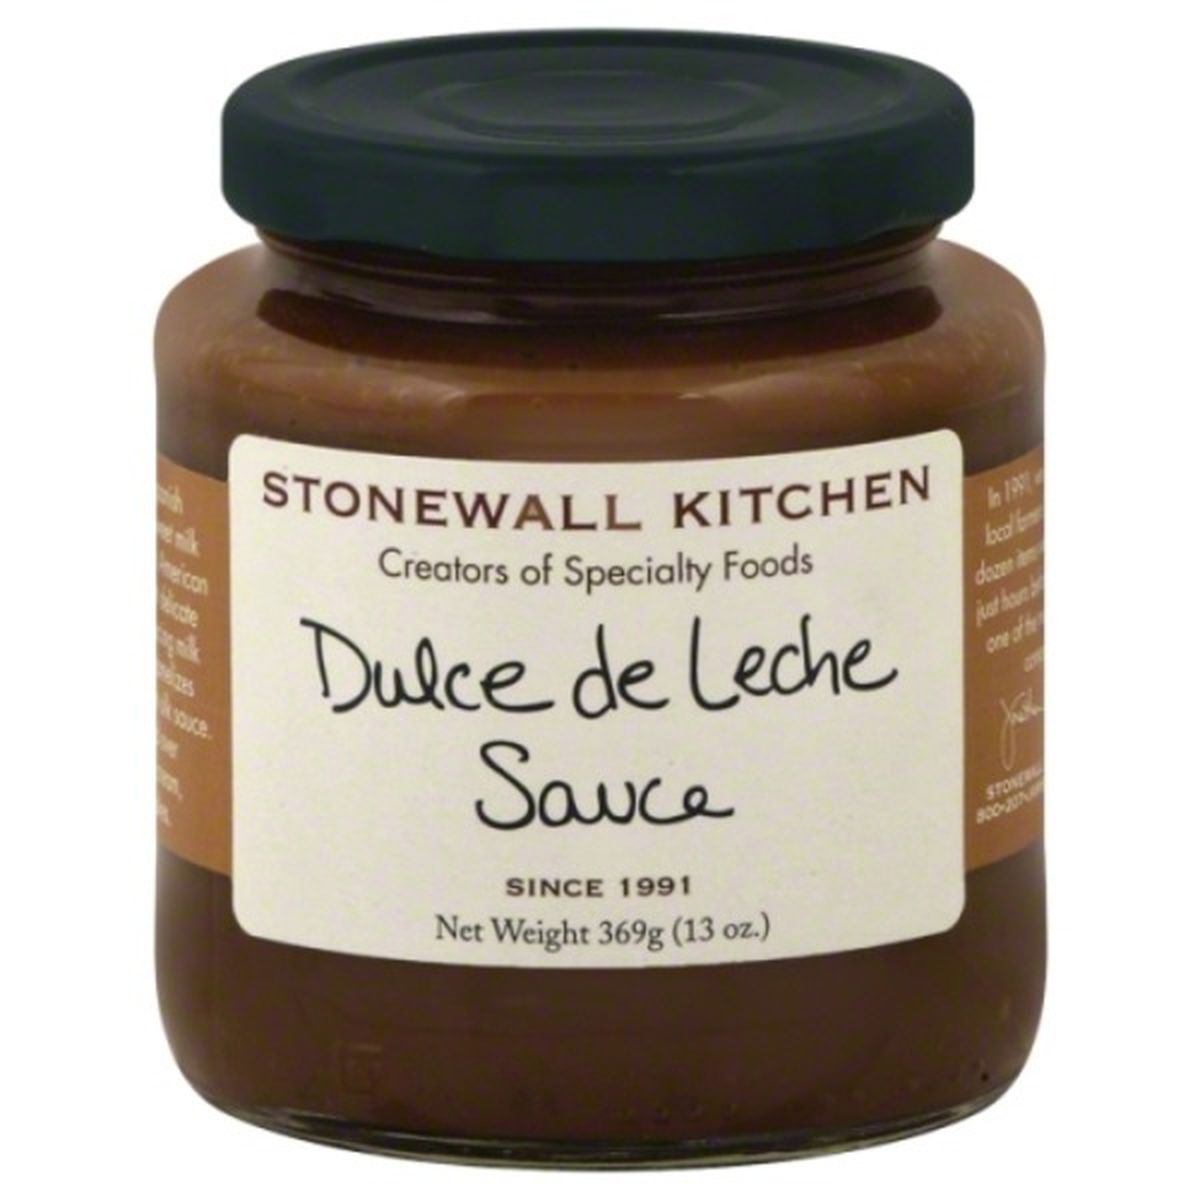 Calories in Stonewall Kitchen Sauce, Dulce de Leche